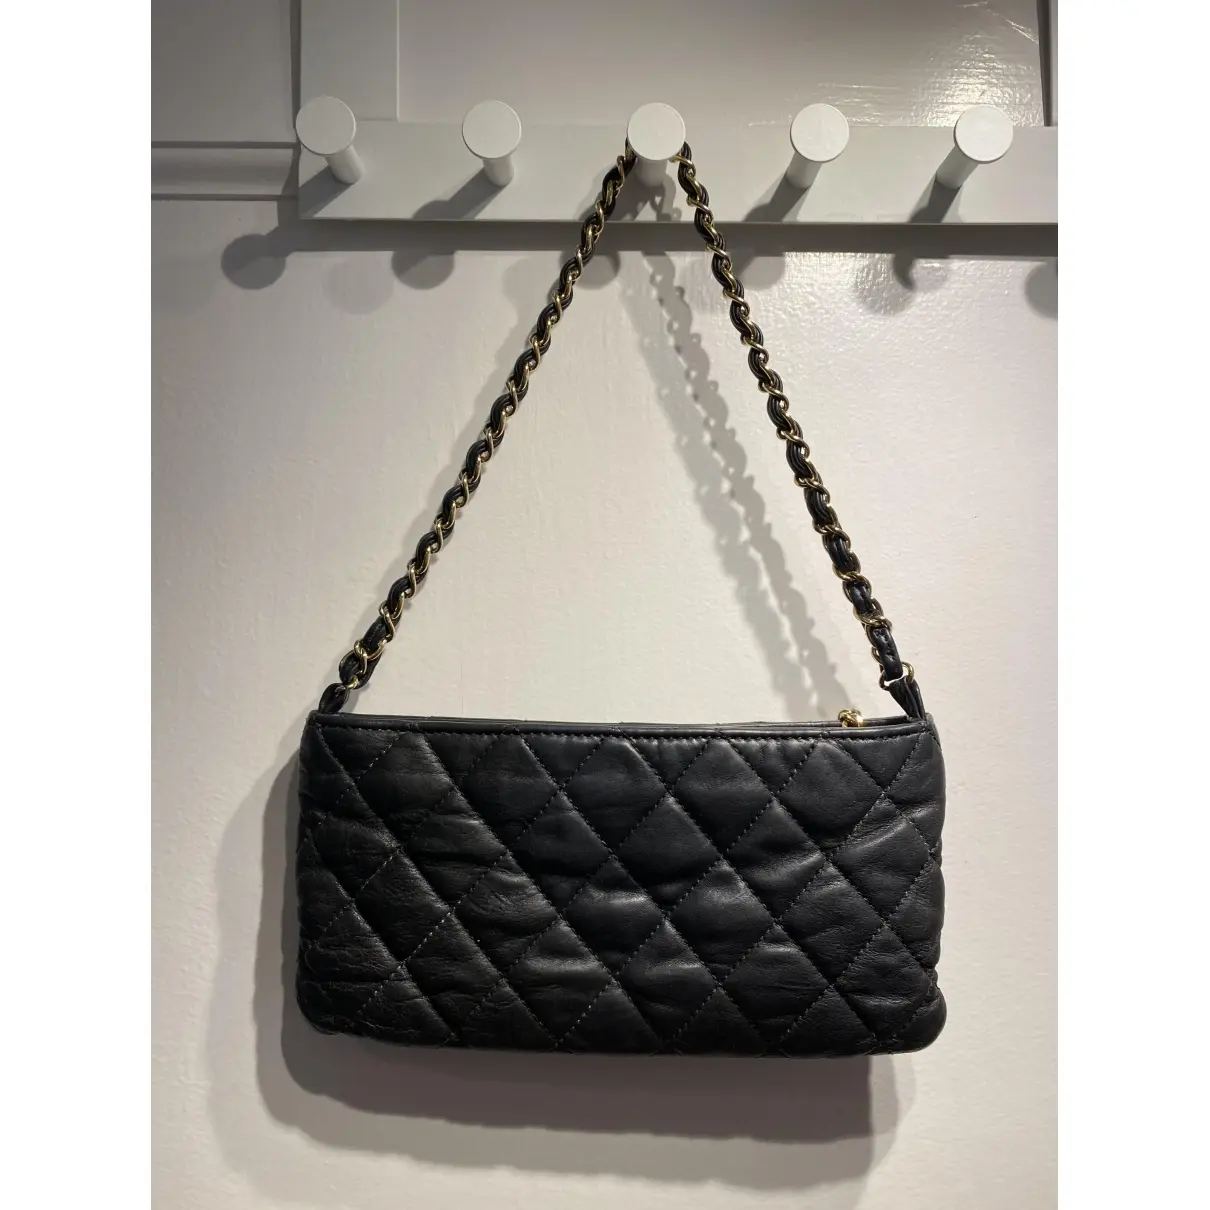 Buy Chanel Leather clutch bag online - Vintage